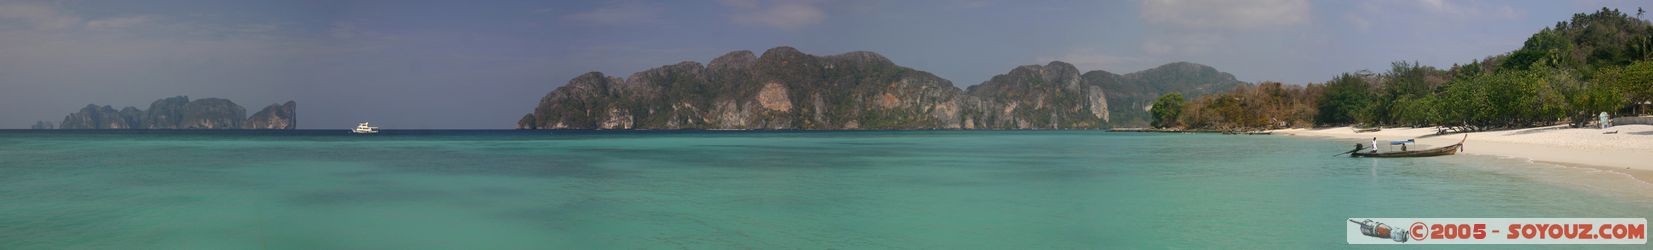 Koh Phi Phi Don - Hat Yao - panorama
Mots-clés: thailand panorama mer